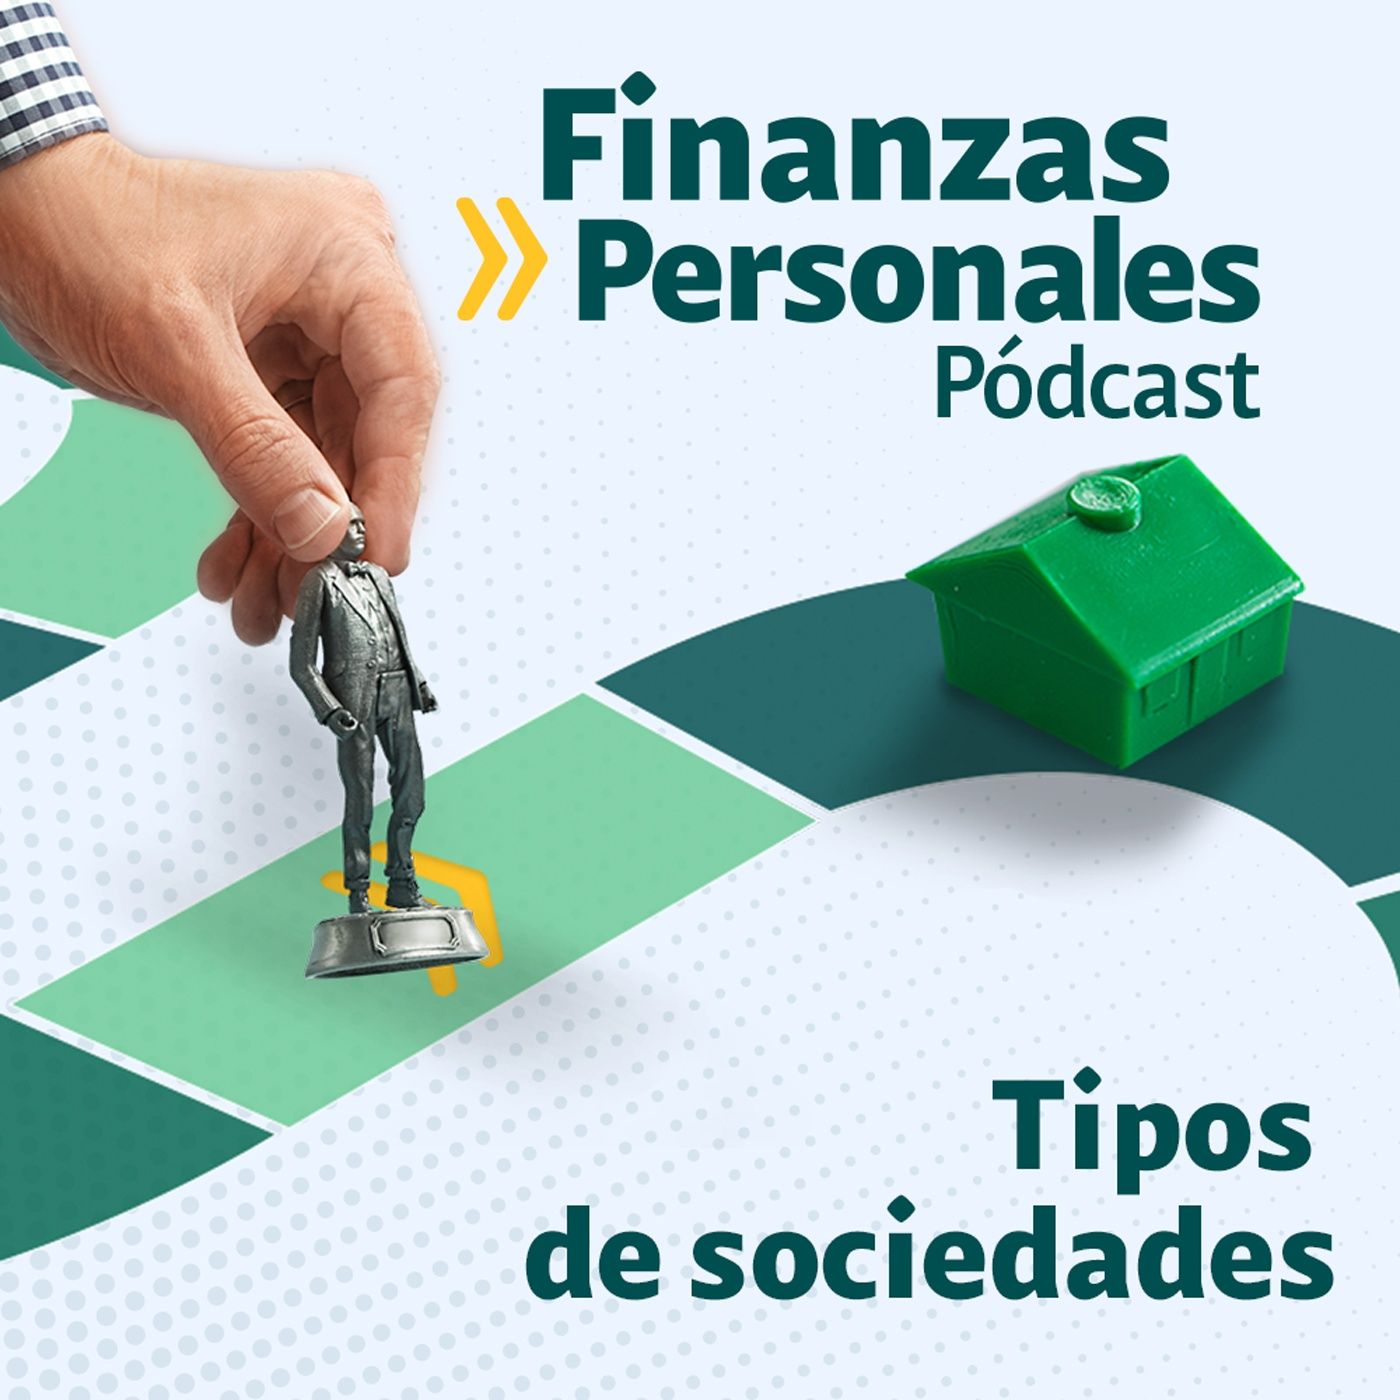 Finanzas Personales: ¿Qué tipo de sociedad es la mejor para su emprendimiento?